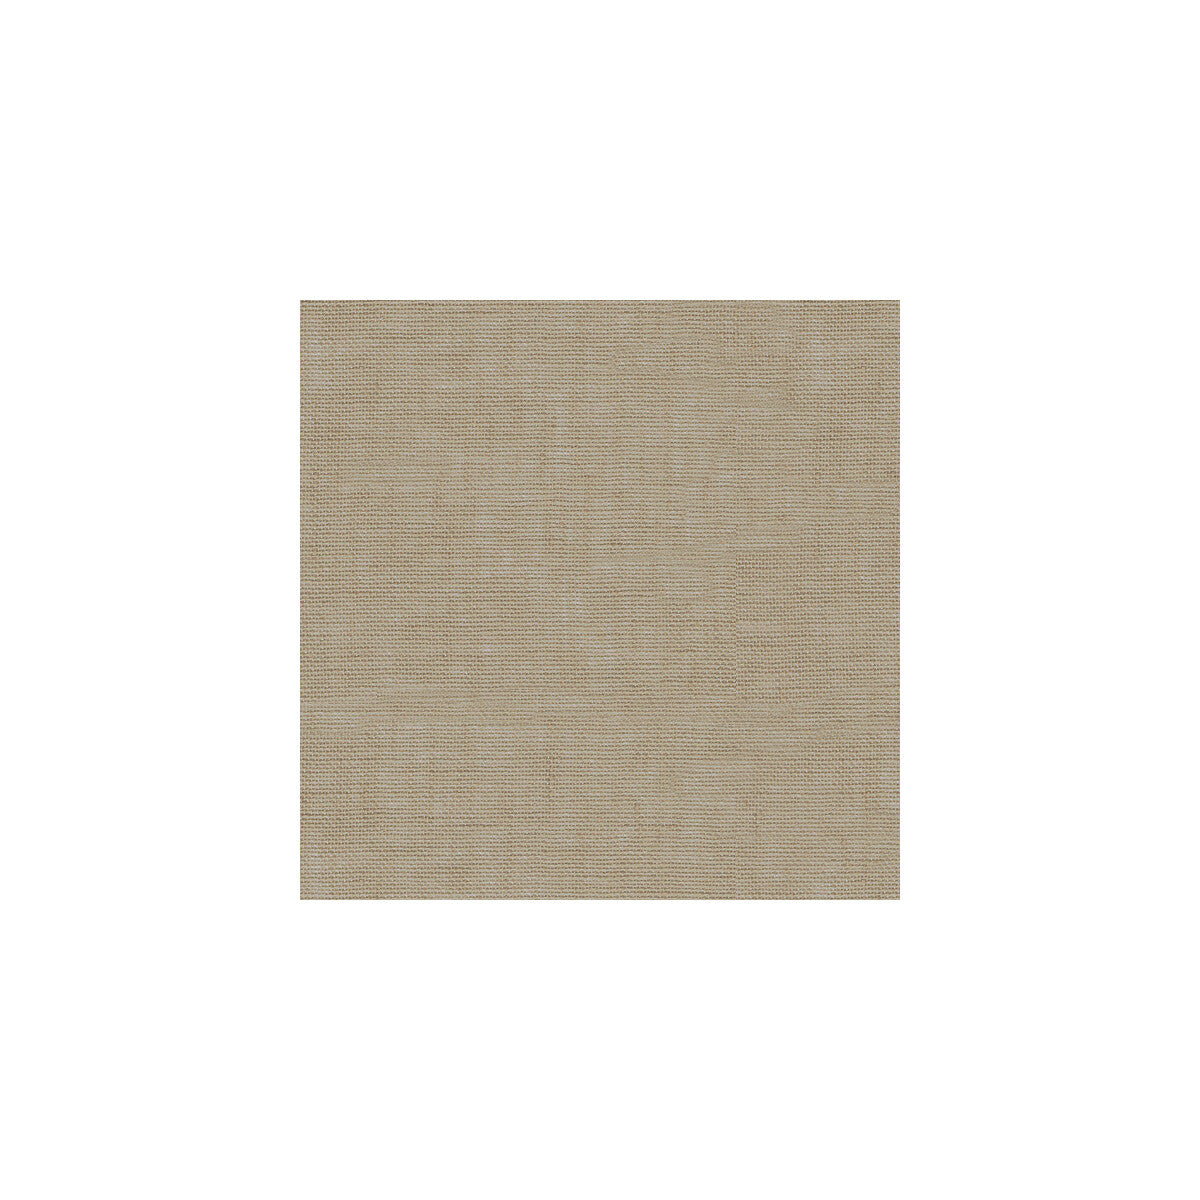 Kravet Basics fabric in 3582-106 color - pattern 3582.106.0 - by Kravet Basics